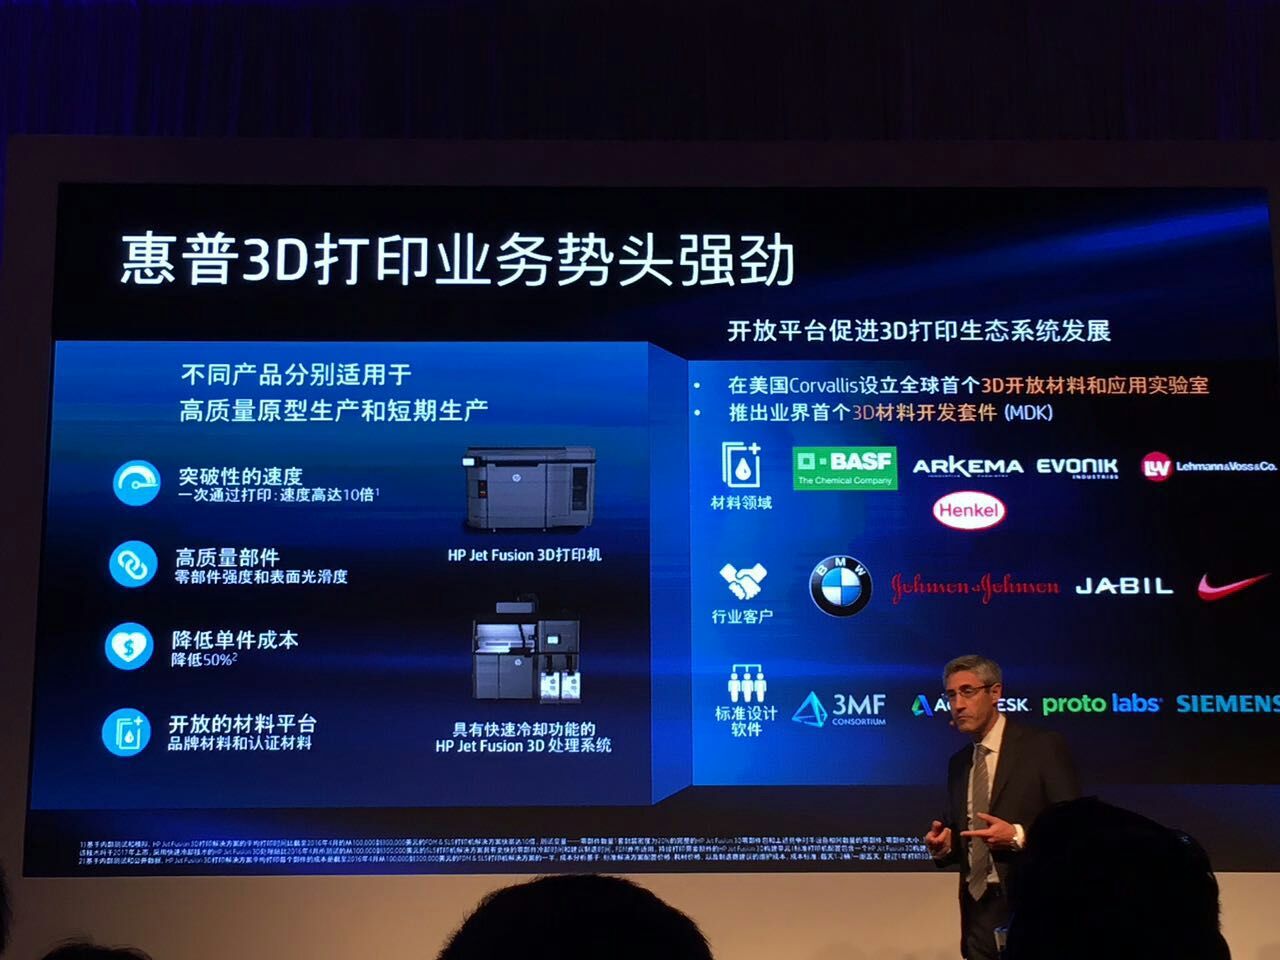 加速制造業轉型升級 惠普在中國推出3D打印方案